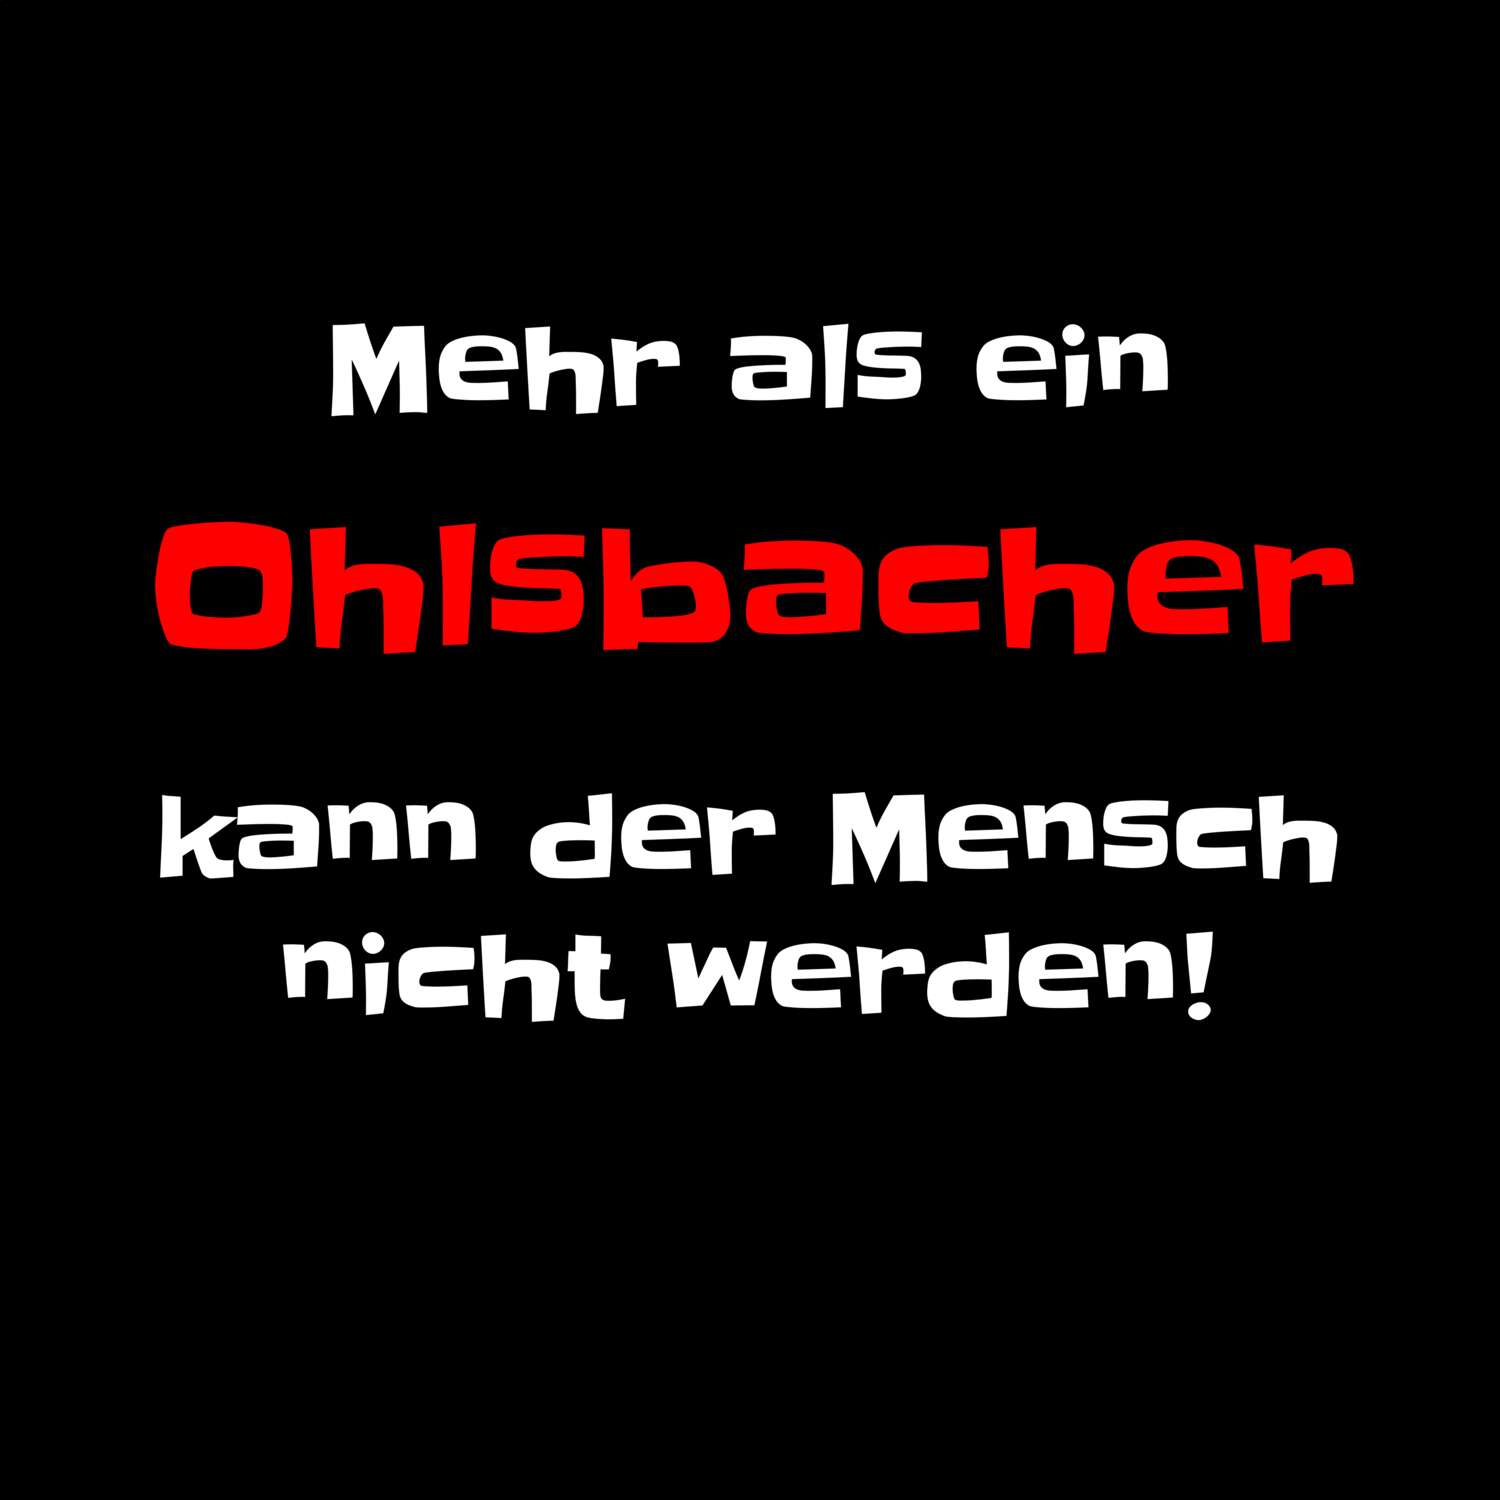 Ohlsbach T-Shirt »Mehr als ein«